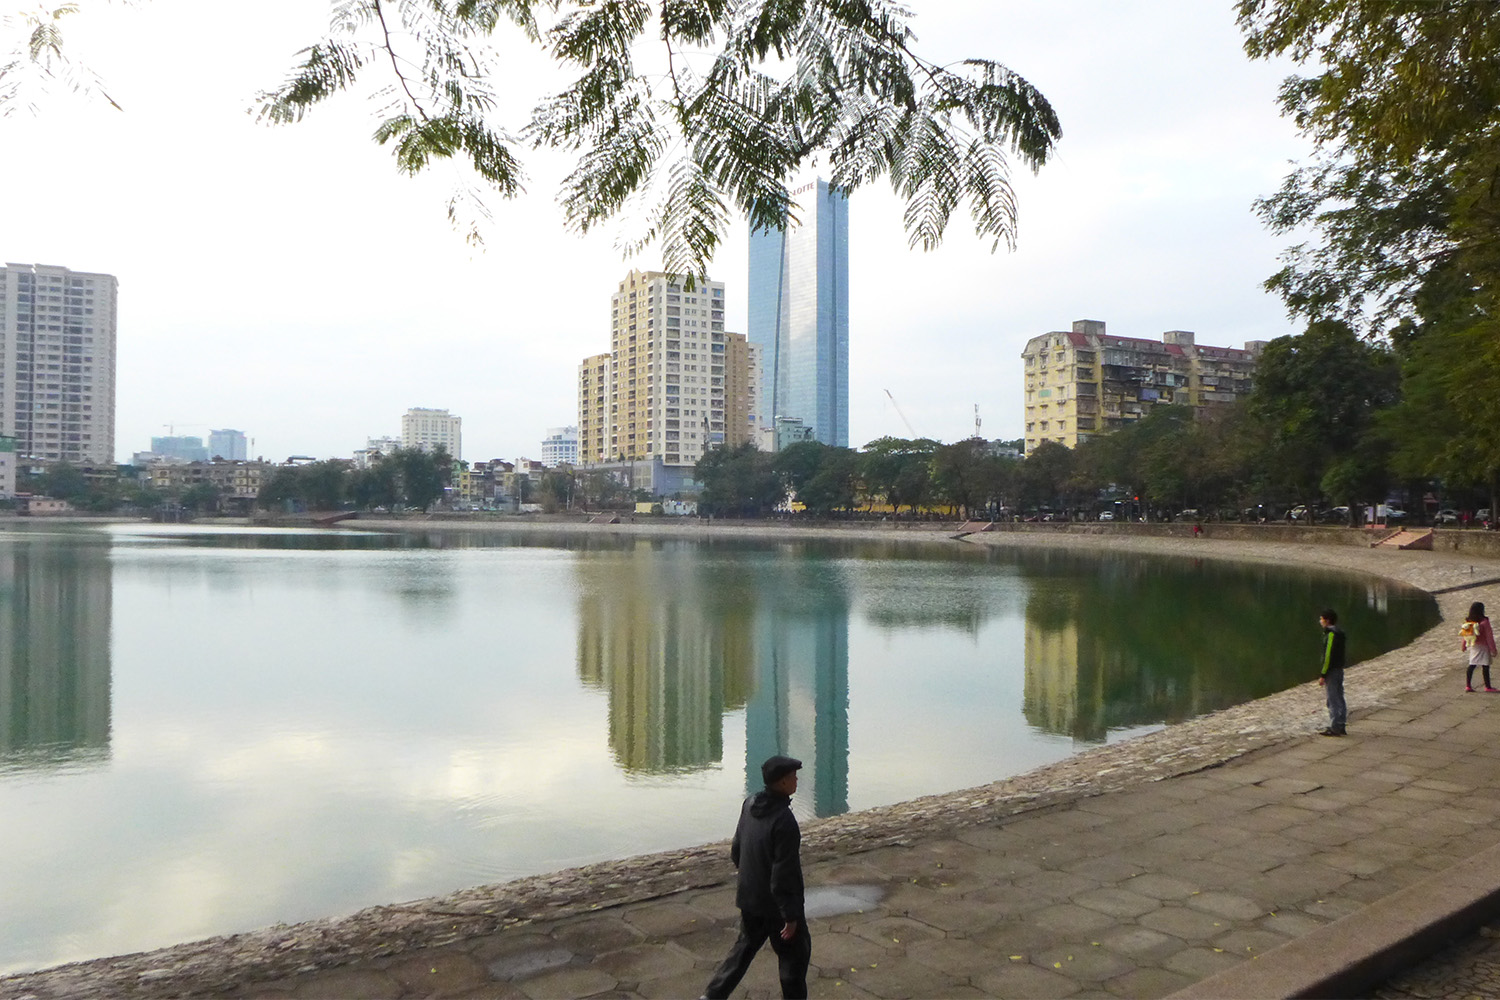 Le collège est situé face à un magnifique lac, comme il y en a beaucoup à Hanoi.